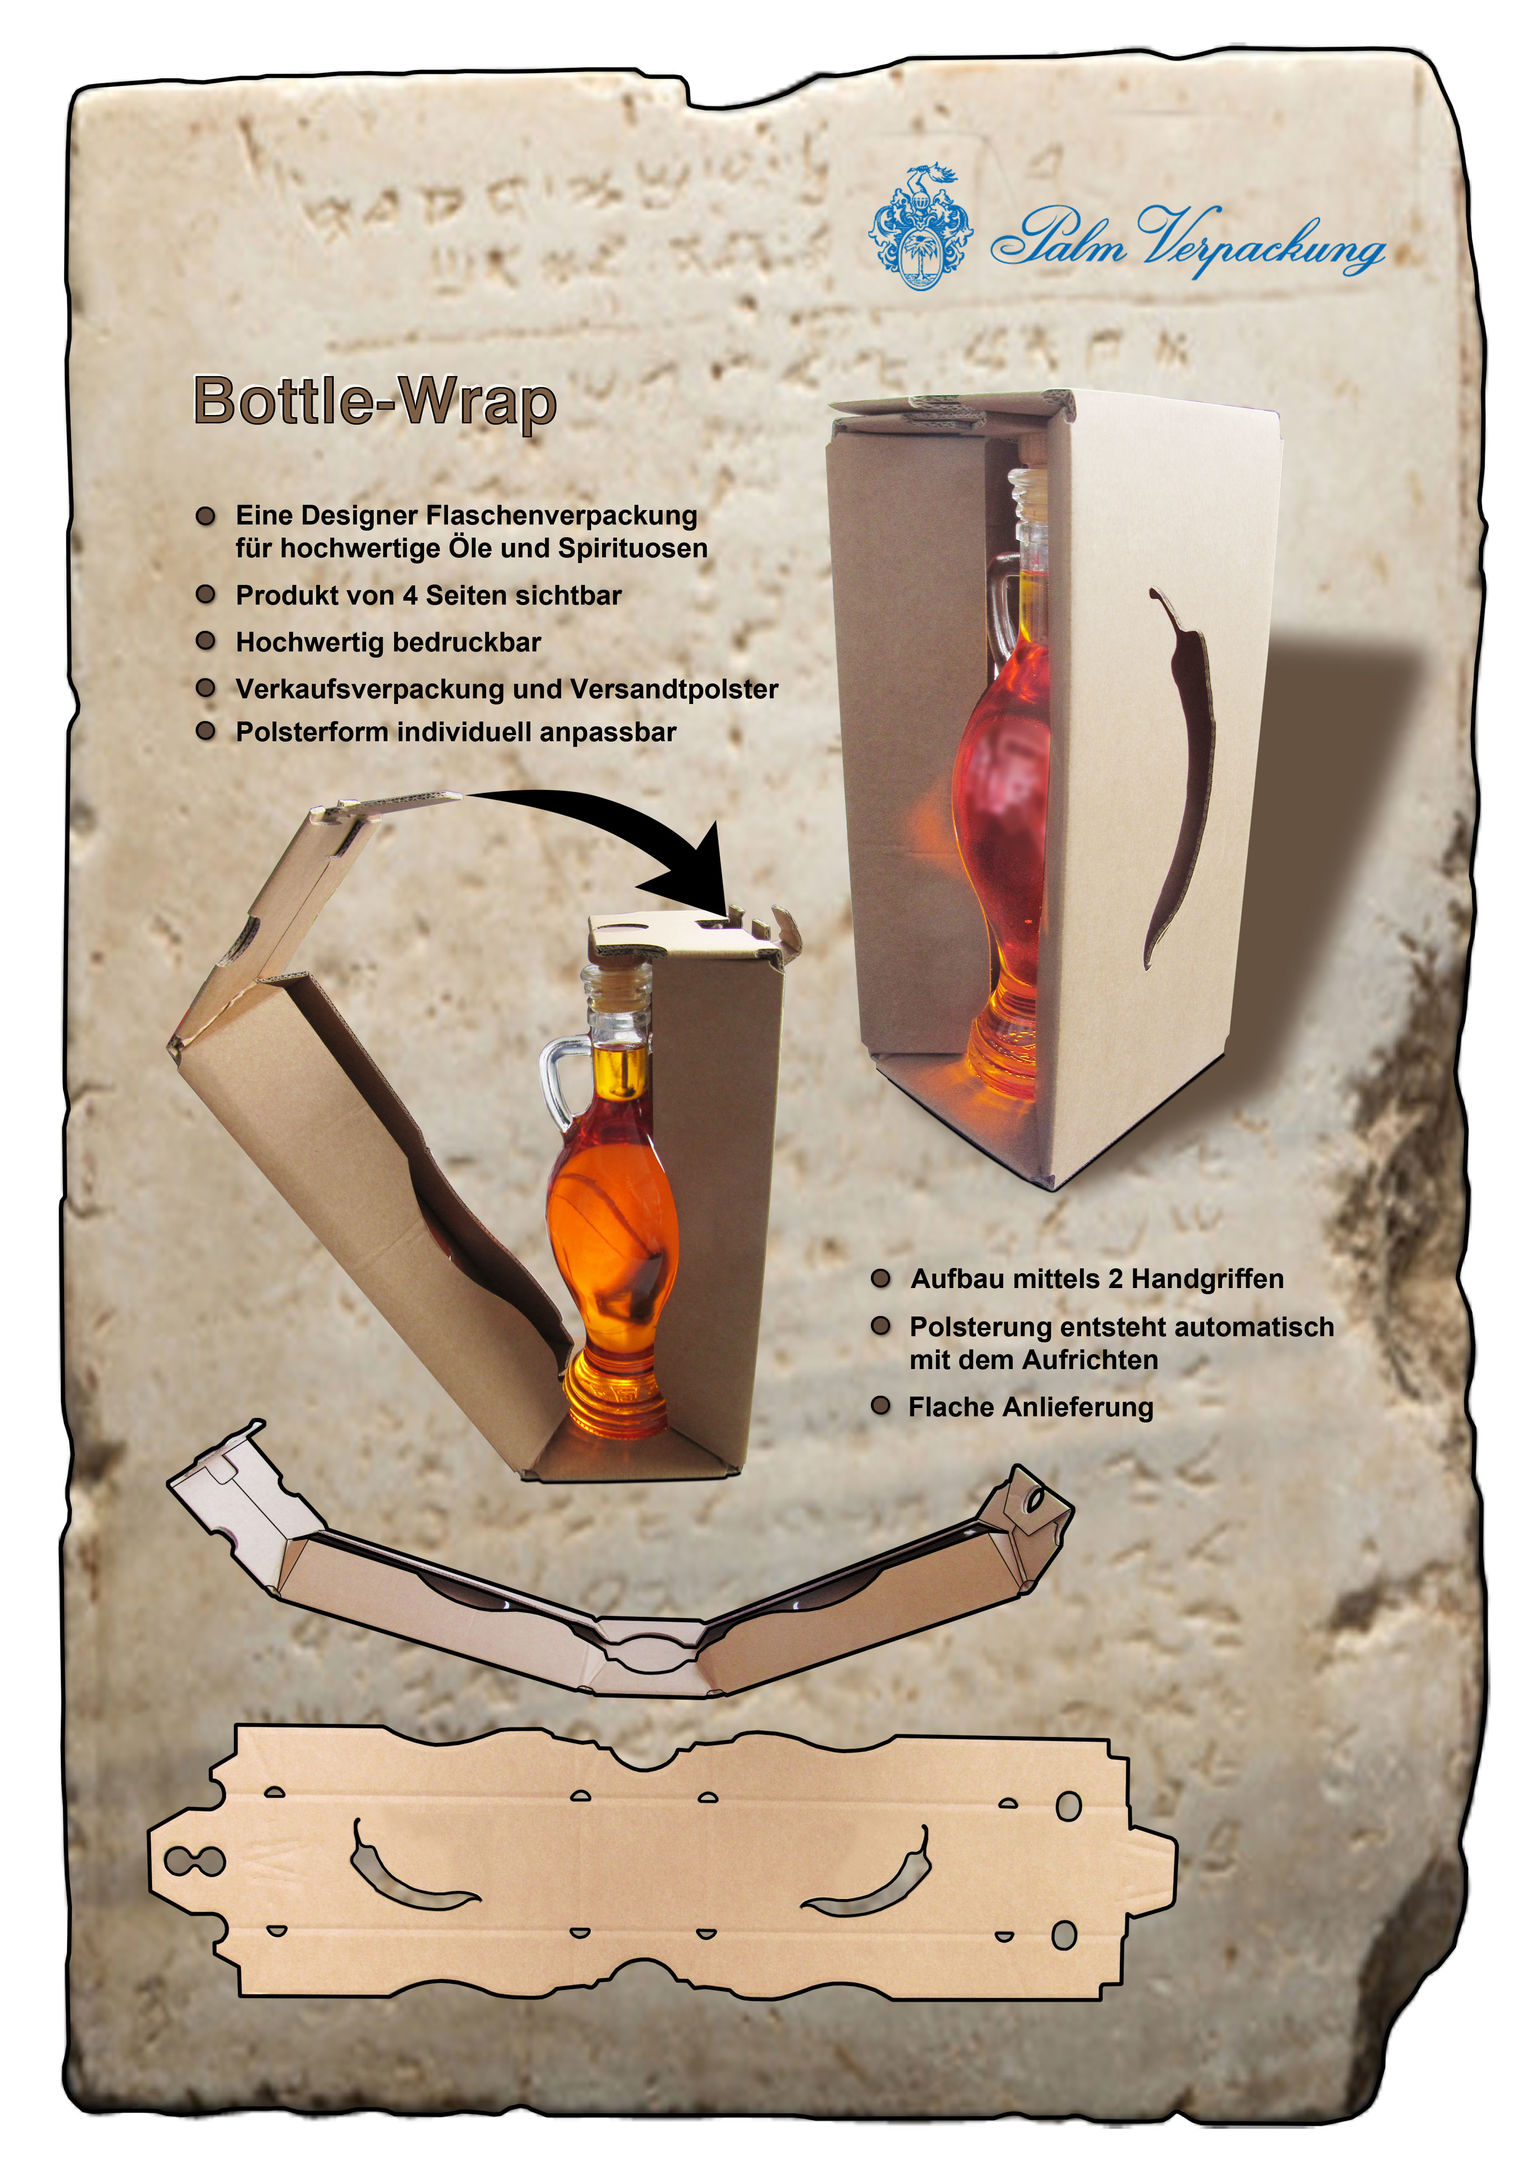 Bottle-Wrap